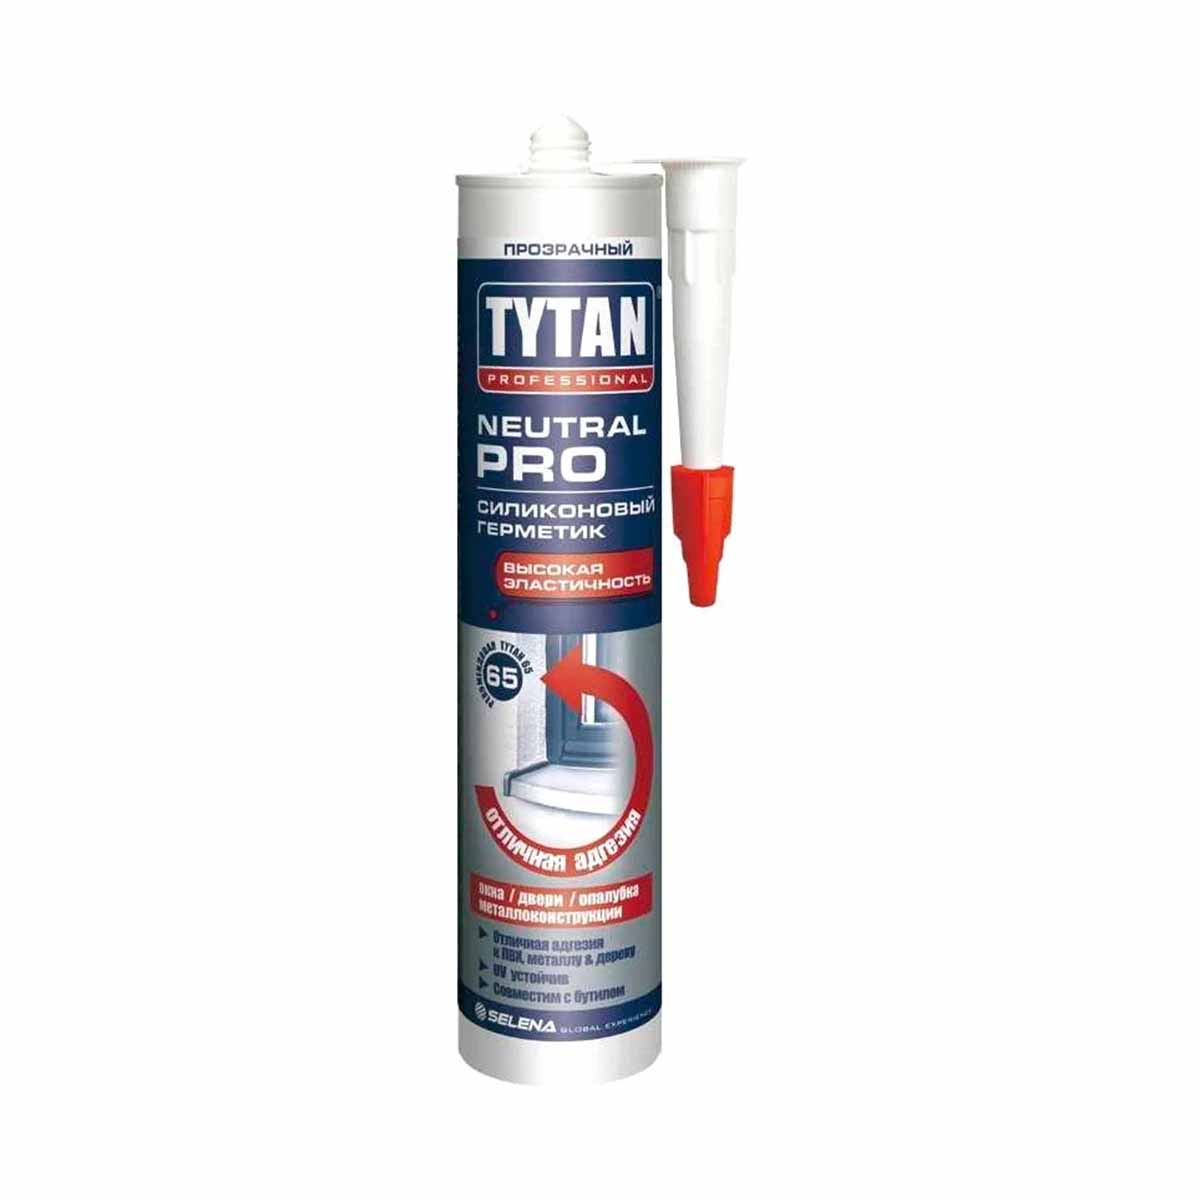 Нейтральный силиконовый герметик Tytan Professional Neutral PRO 17957, 280 мл, прозрачный герметик силиконовый санитарный tytan 17601 85 мл блистер белый